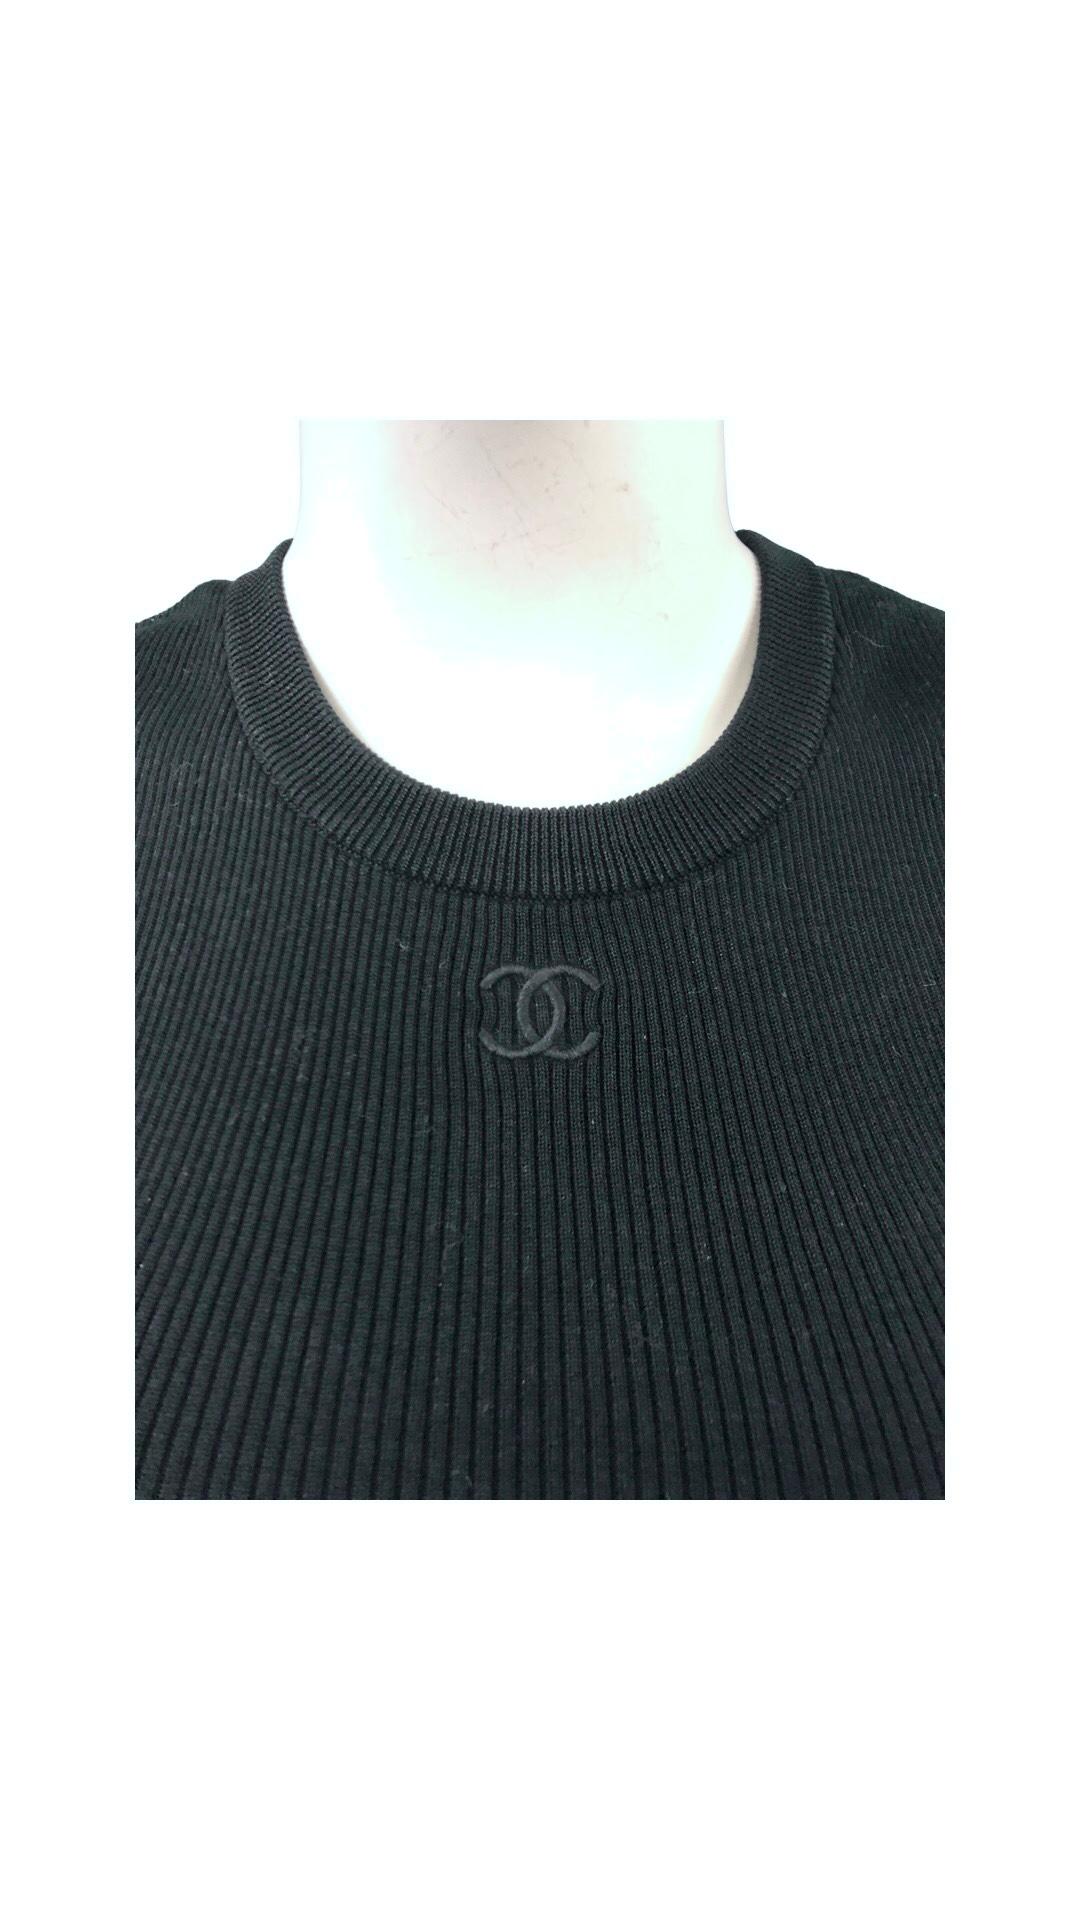 - Vintage Chanel schwarzes Baumwolloberteil aus der Frühjahrskollektion 1995. 

- Größe 40.

